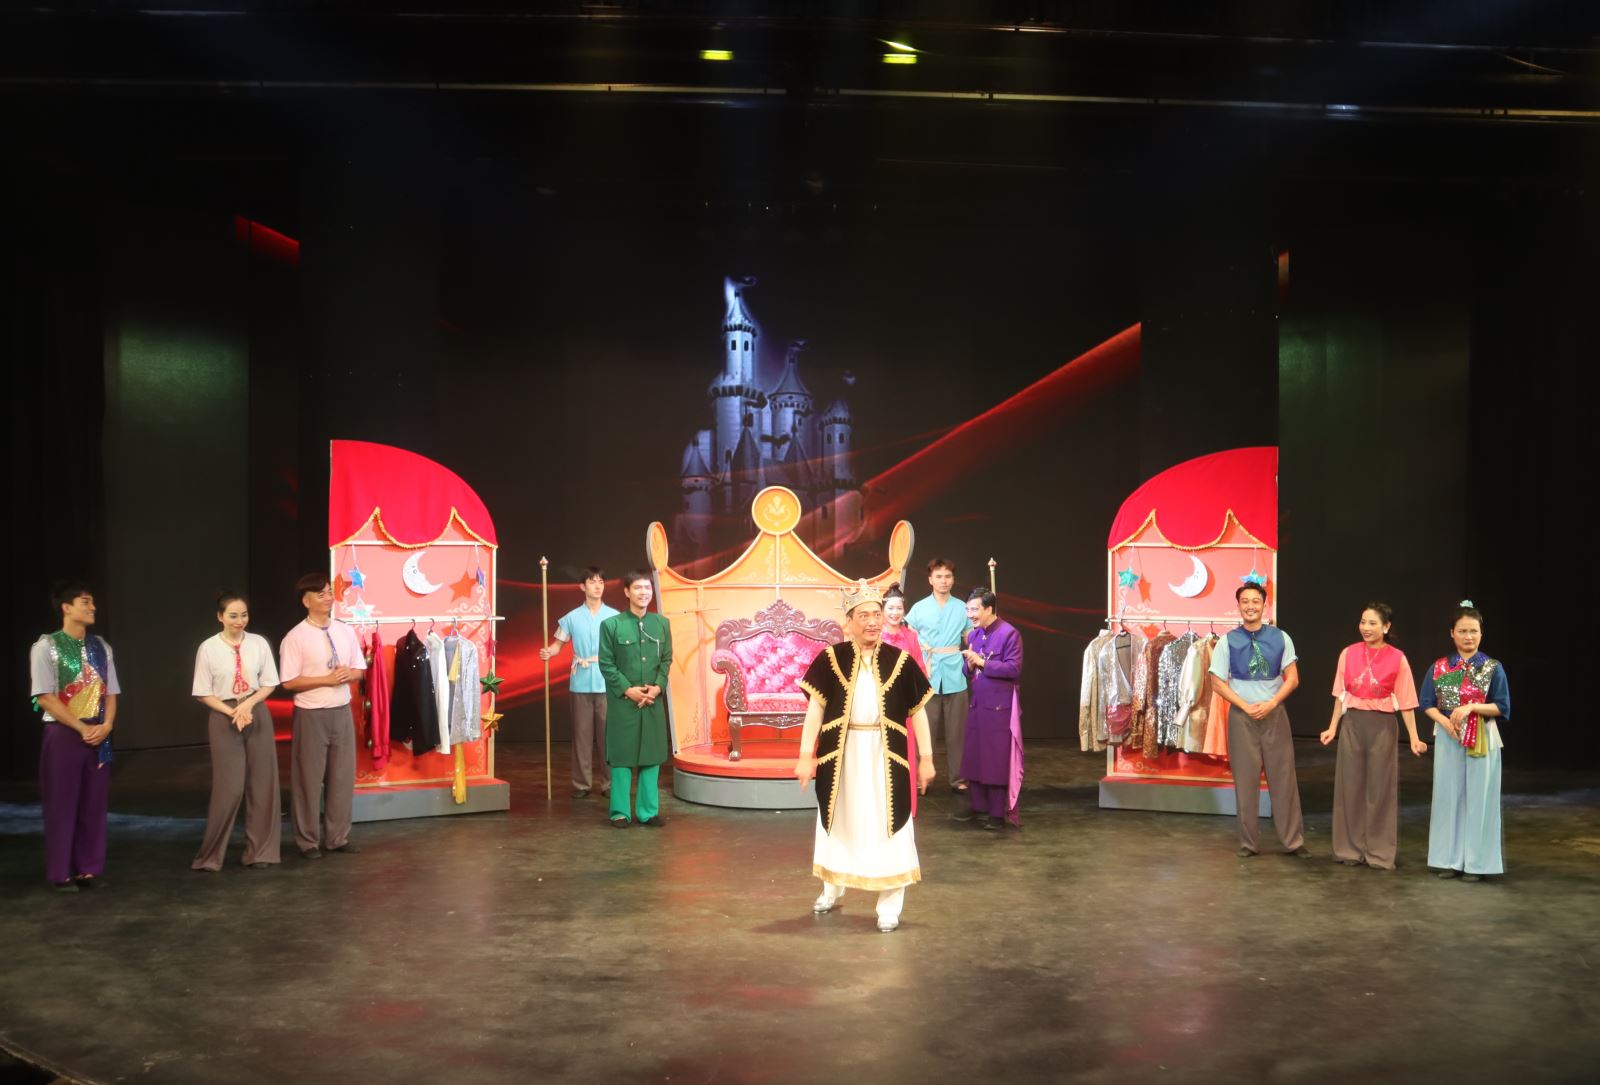 Tối ngày 2-5-2024, Nhà hát Kịch Việt Nam chính thức ra mắt vở kịch thiếu nhi “Bộ quần áo mới của Hoàng đế” tại Nhà hát Star Galaxy (87 Láng Hạ, Ba Đình, Hà Nội). Vở kịch sẽ là món quà hấp dẫn đối với các khán giả nhỏ tuổi nhân dịp ngày Quốc tế Thiếu nhi sắp tới.